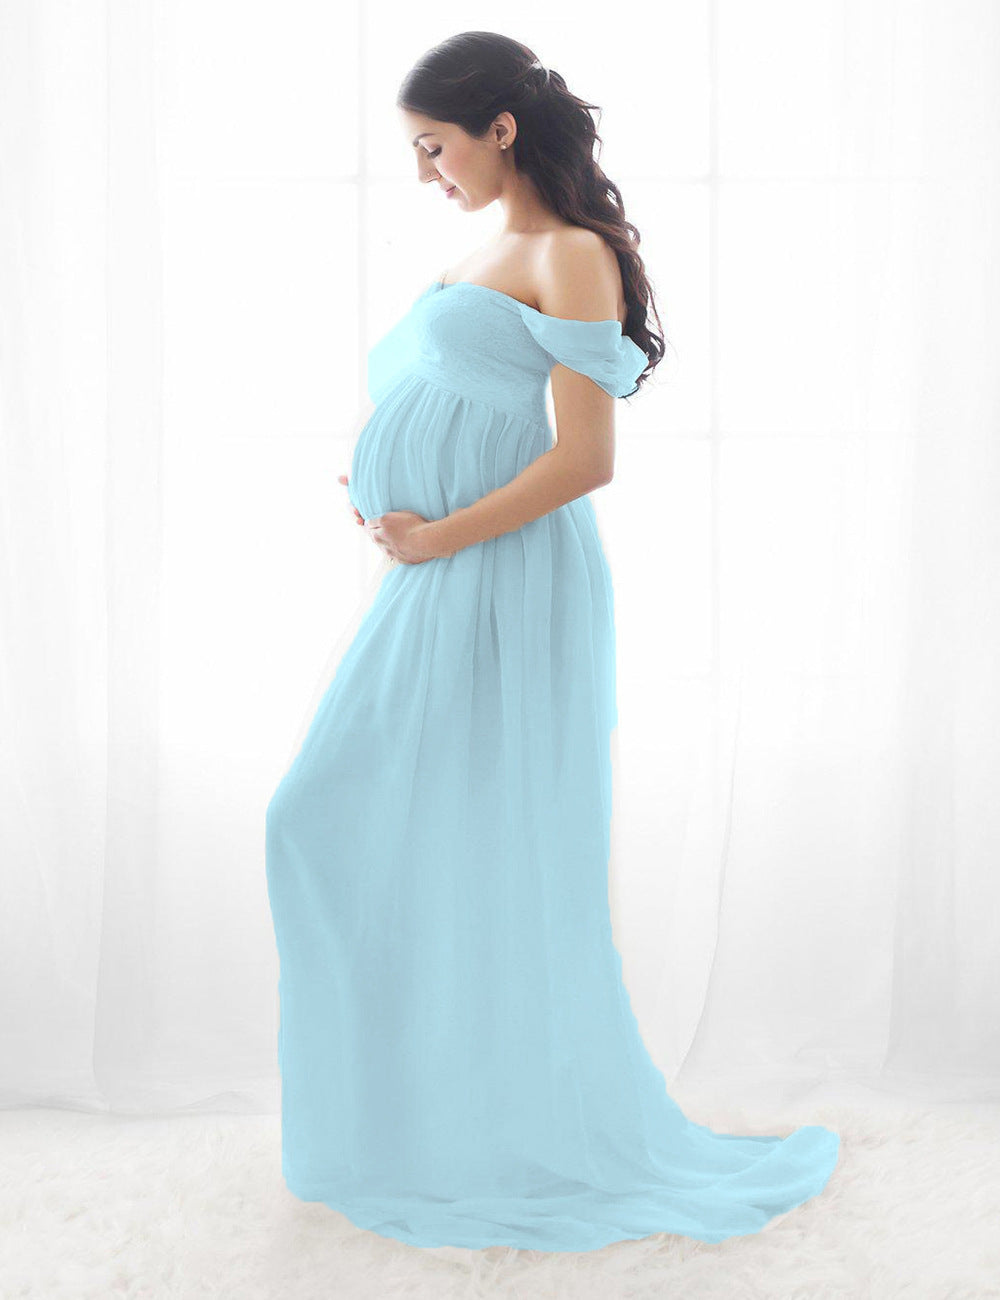 Pregnant Women’s Fashion Dress